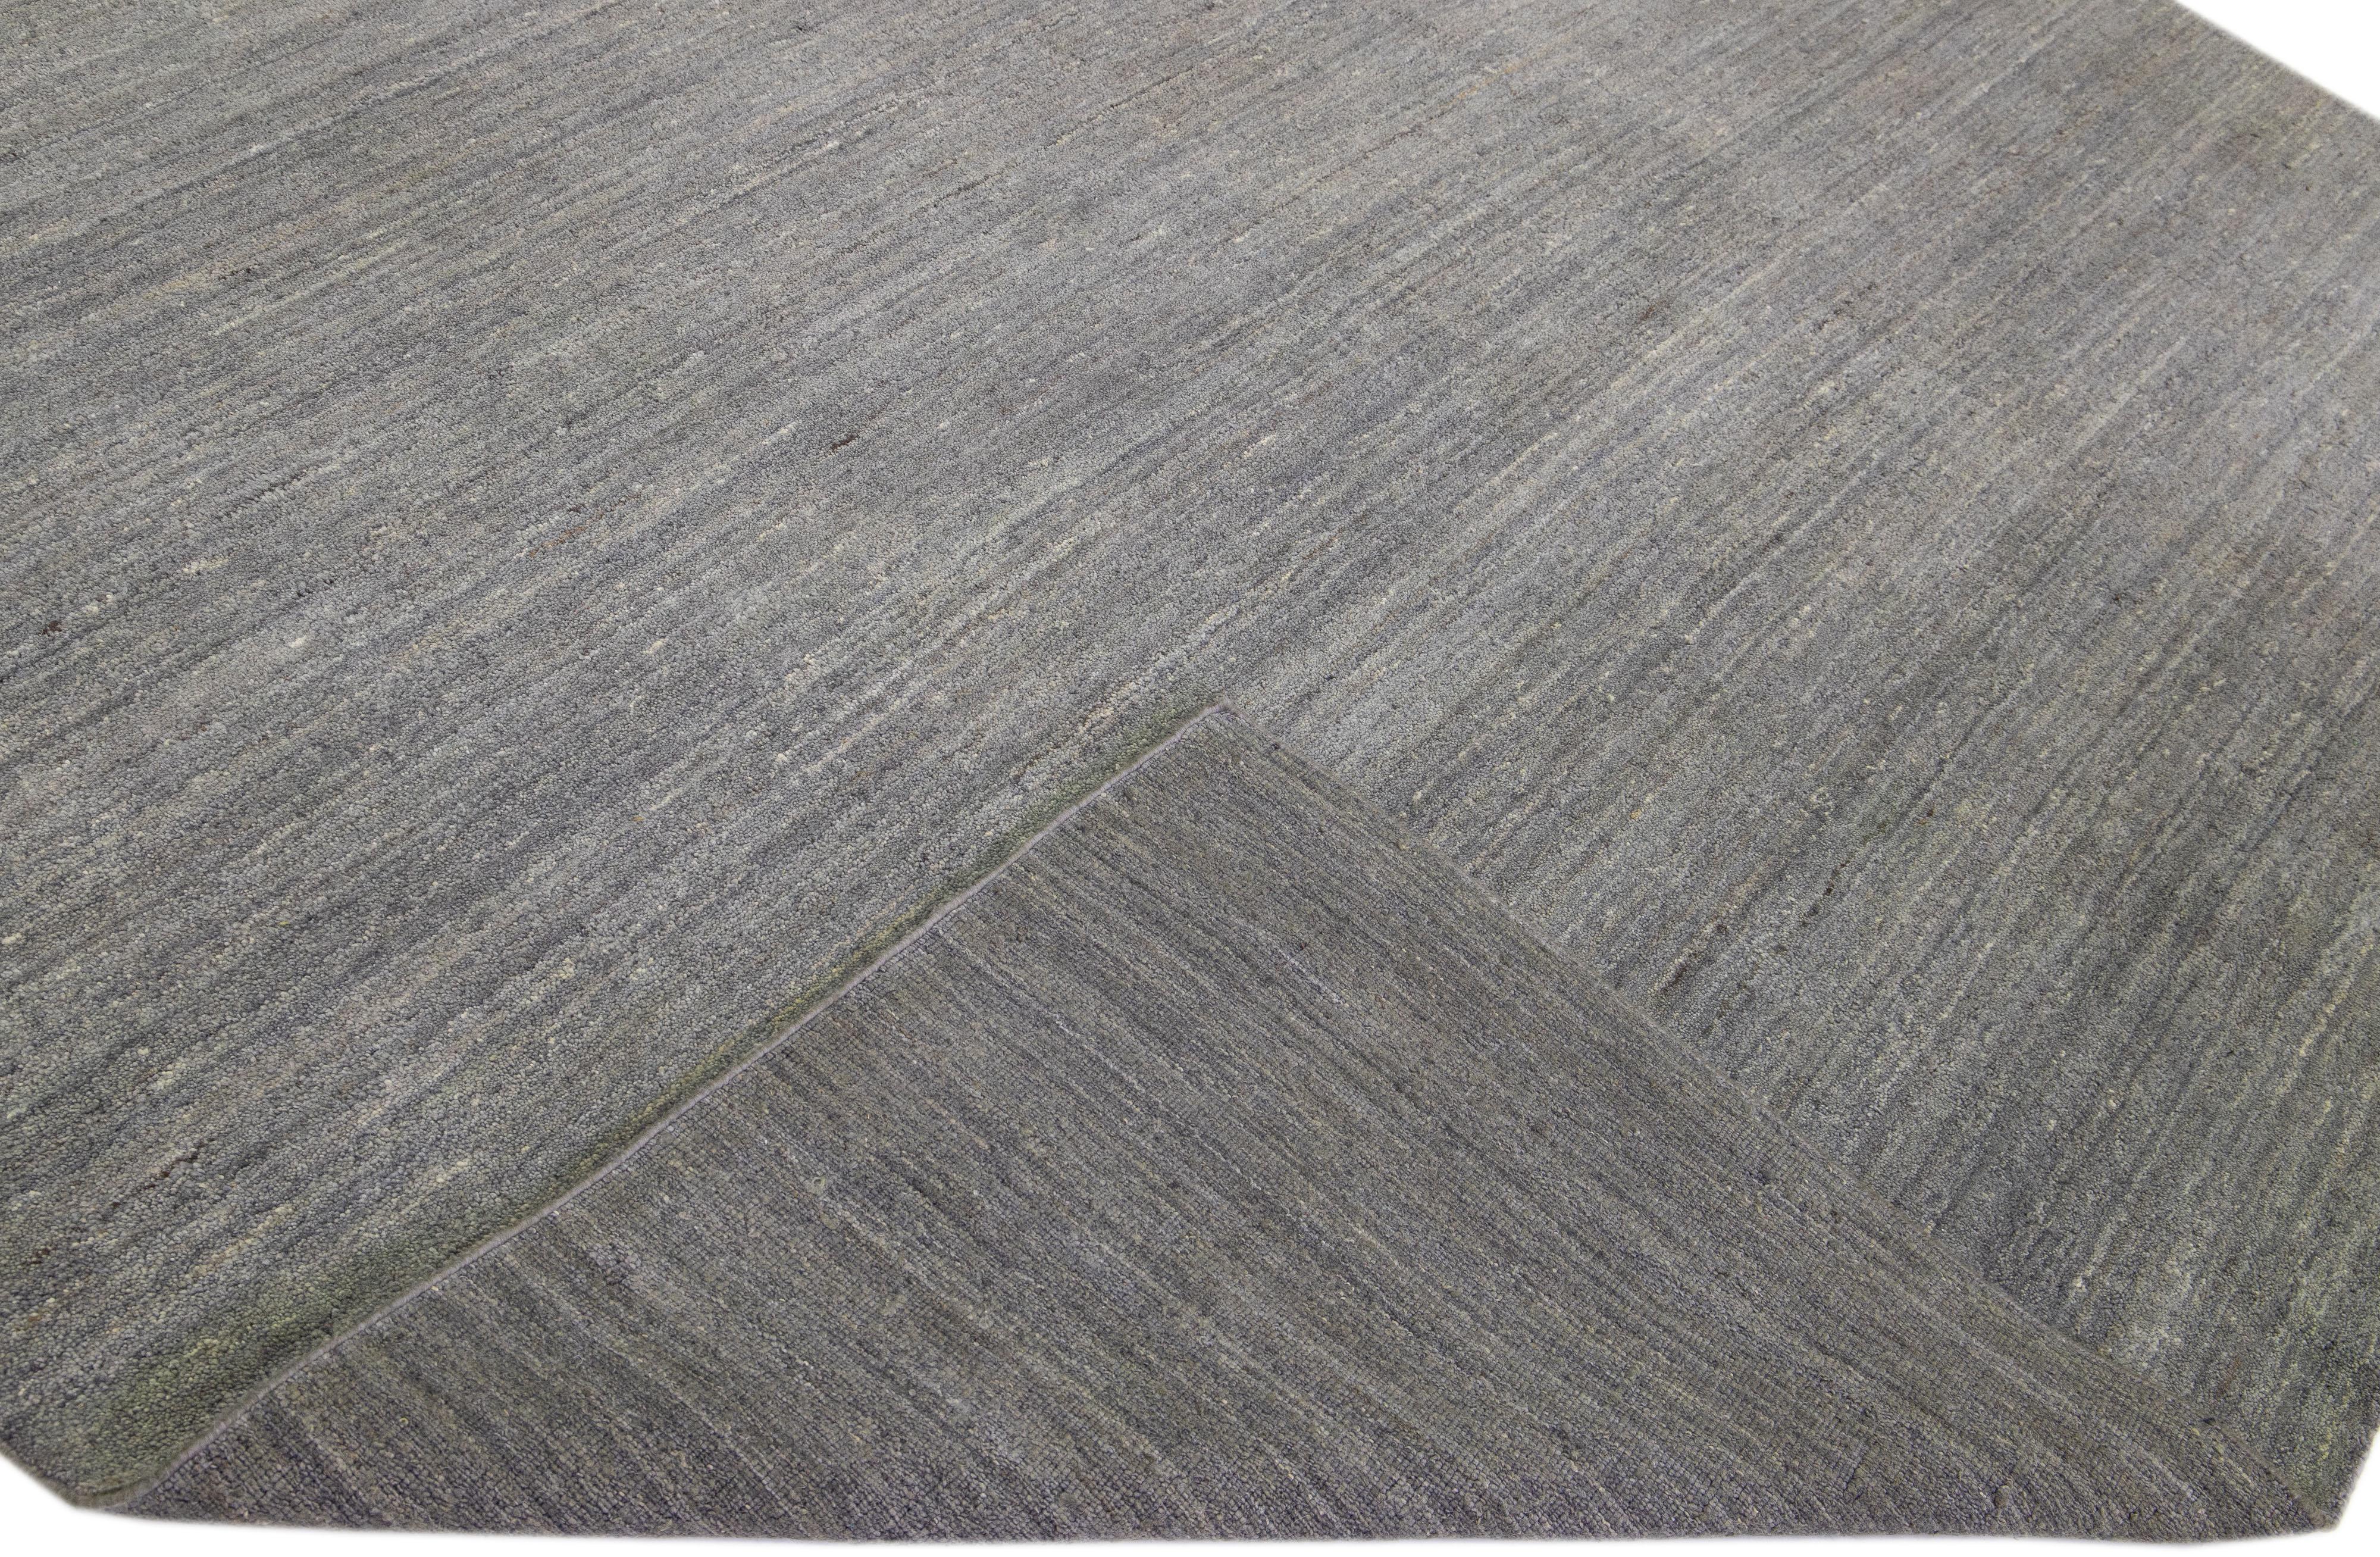 Schöner, moderner, handgeknüpfter Wollteppich im Gabbeh-Stil mit einem grauen Feld in einem herrlichen, unifarbenen Muster.

Dieser Teppich misst: 9'11